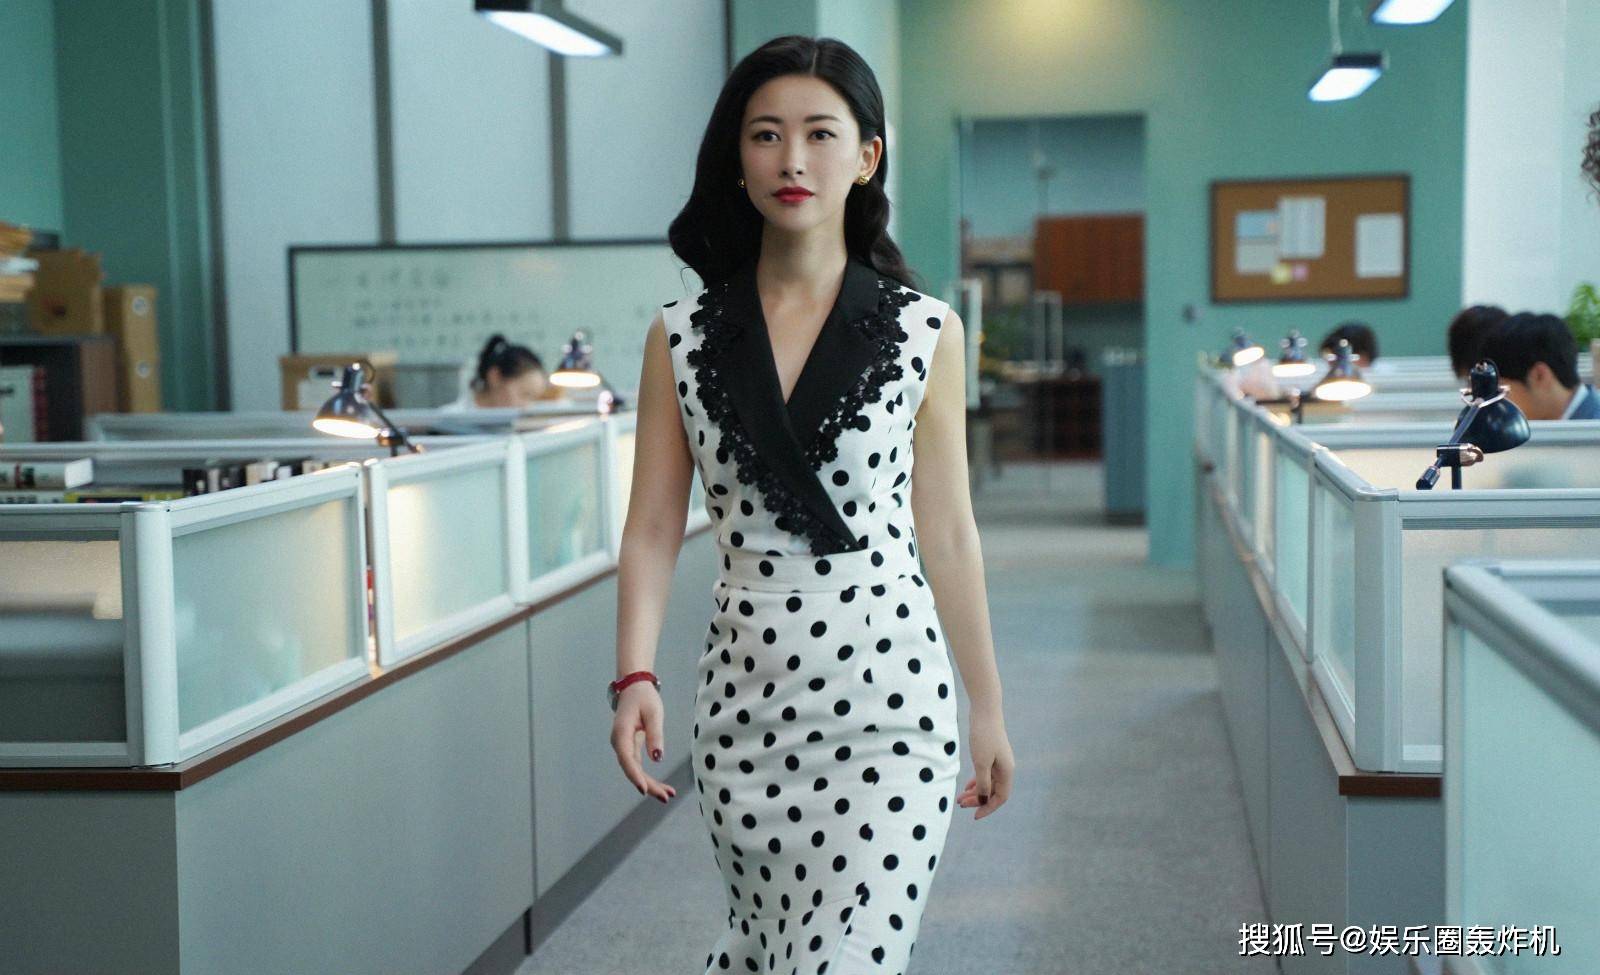 娱乐圈终于传出来一个喜讯:37岁的女演员朱珠结婚啦!